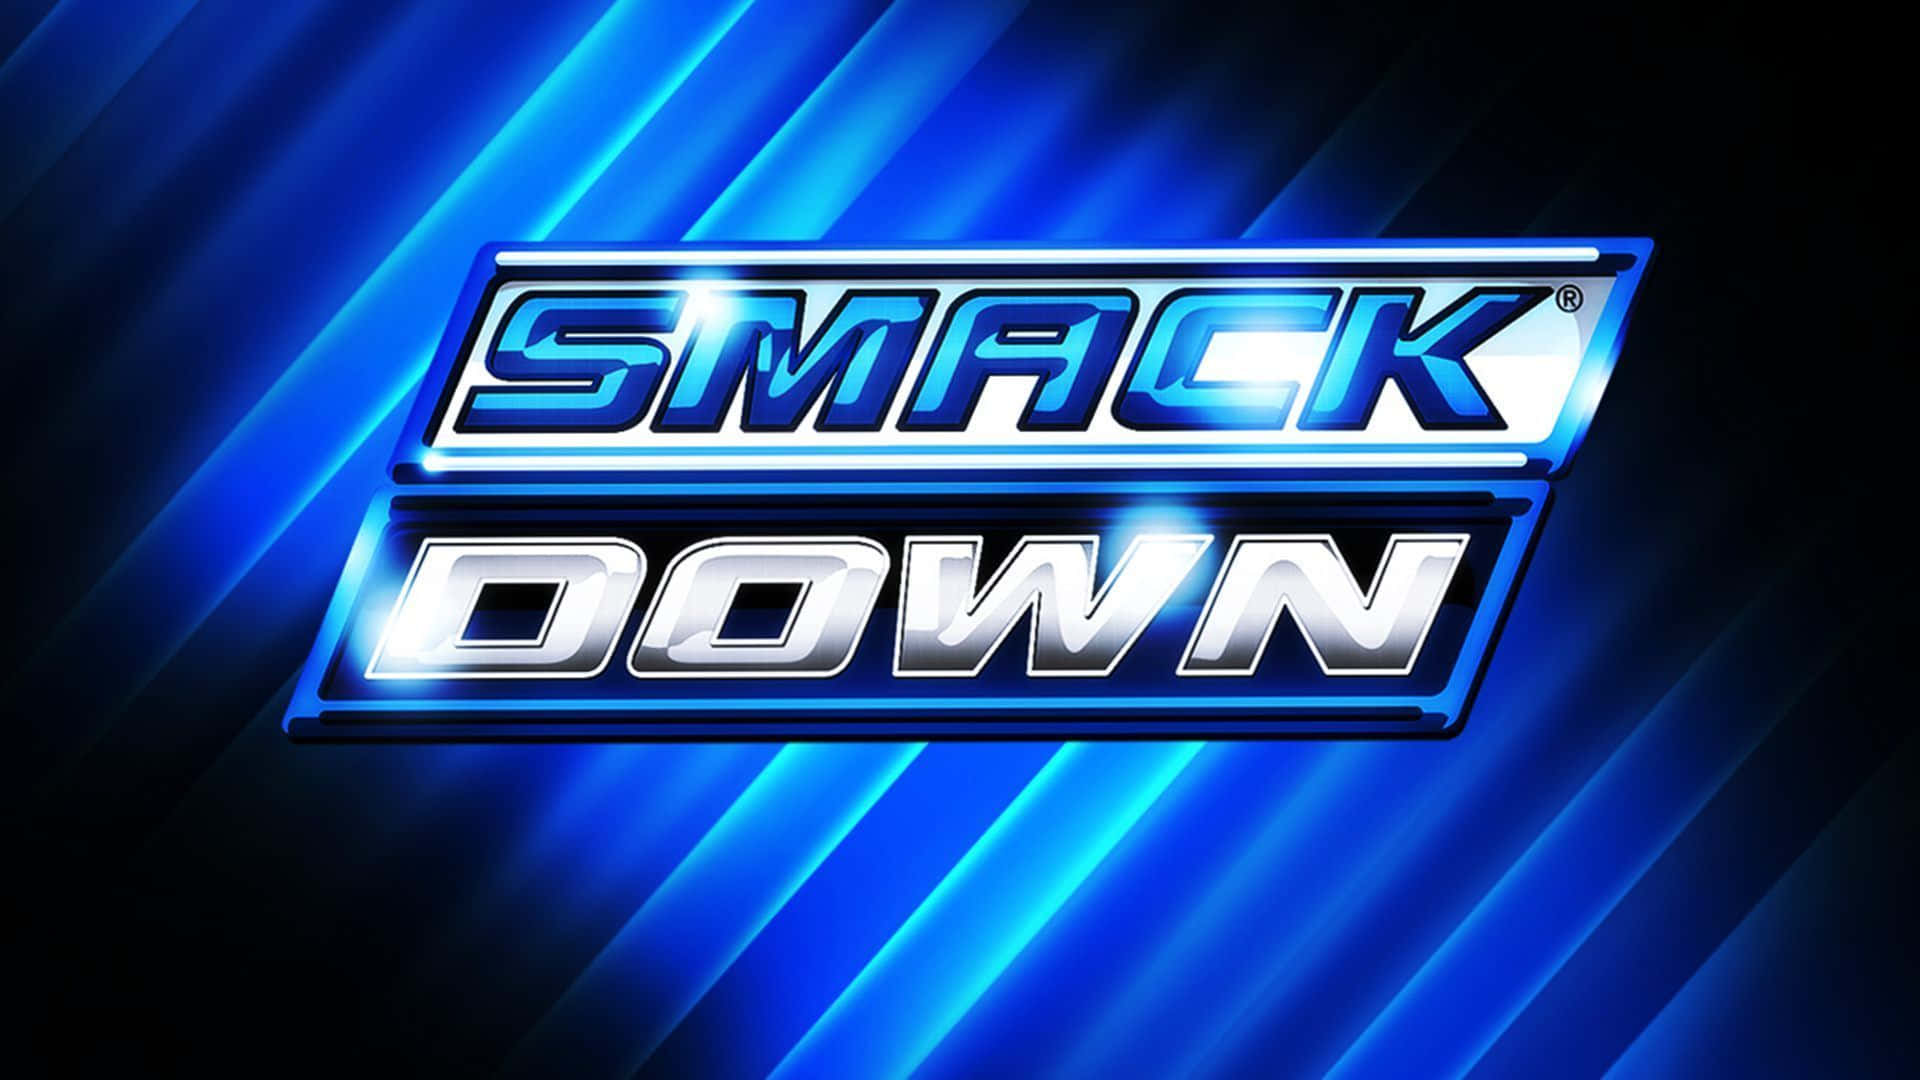 Wwe Smackdown logo på en blå baggrund Wallpaper